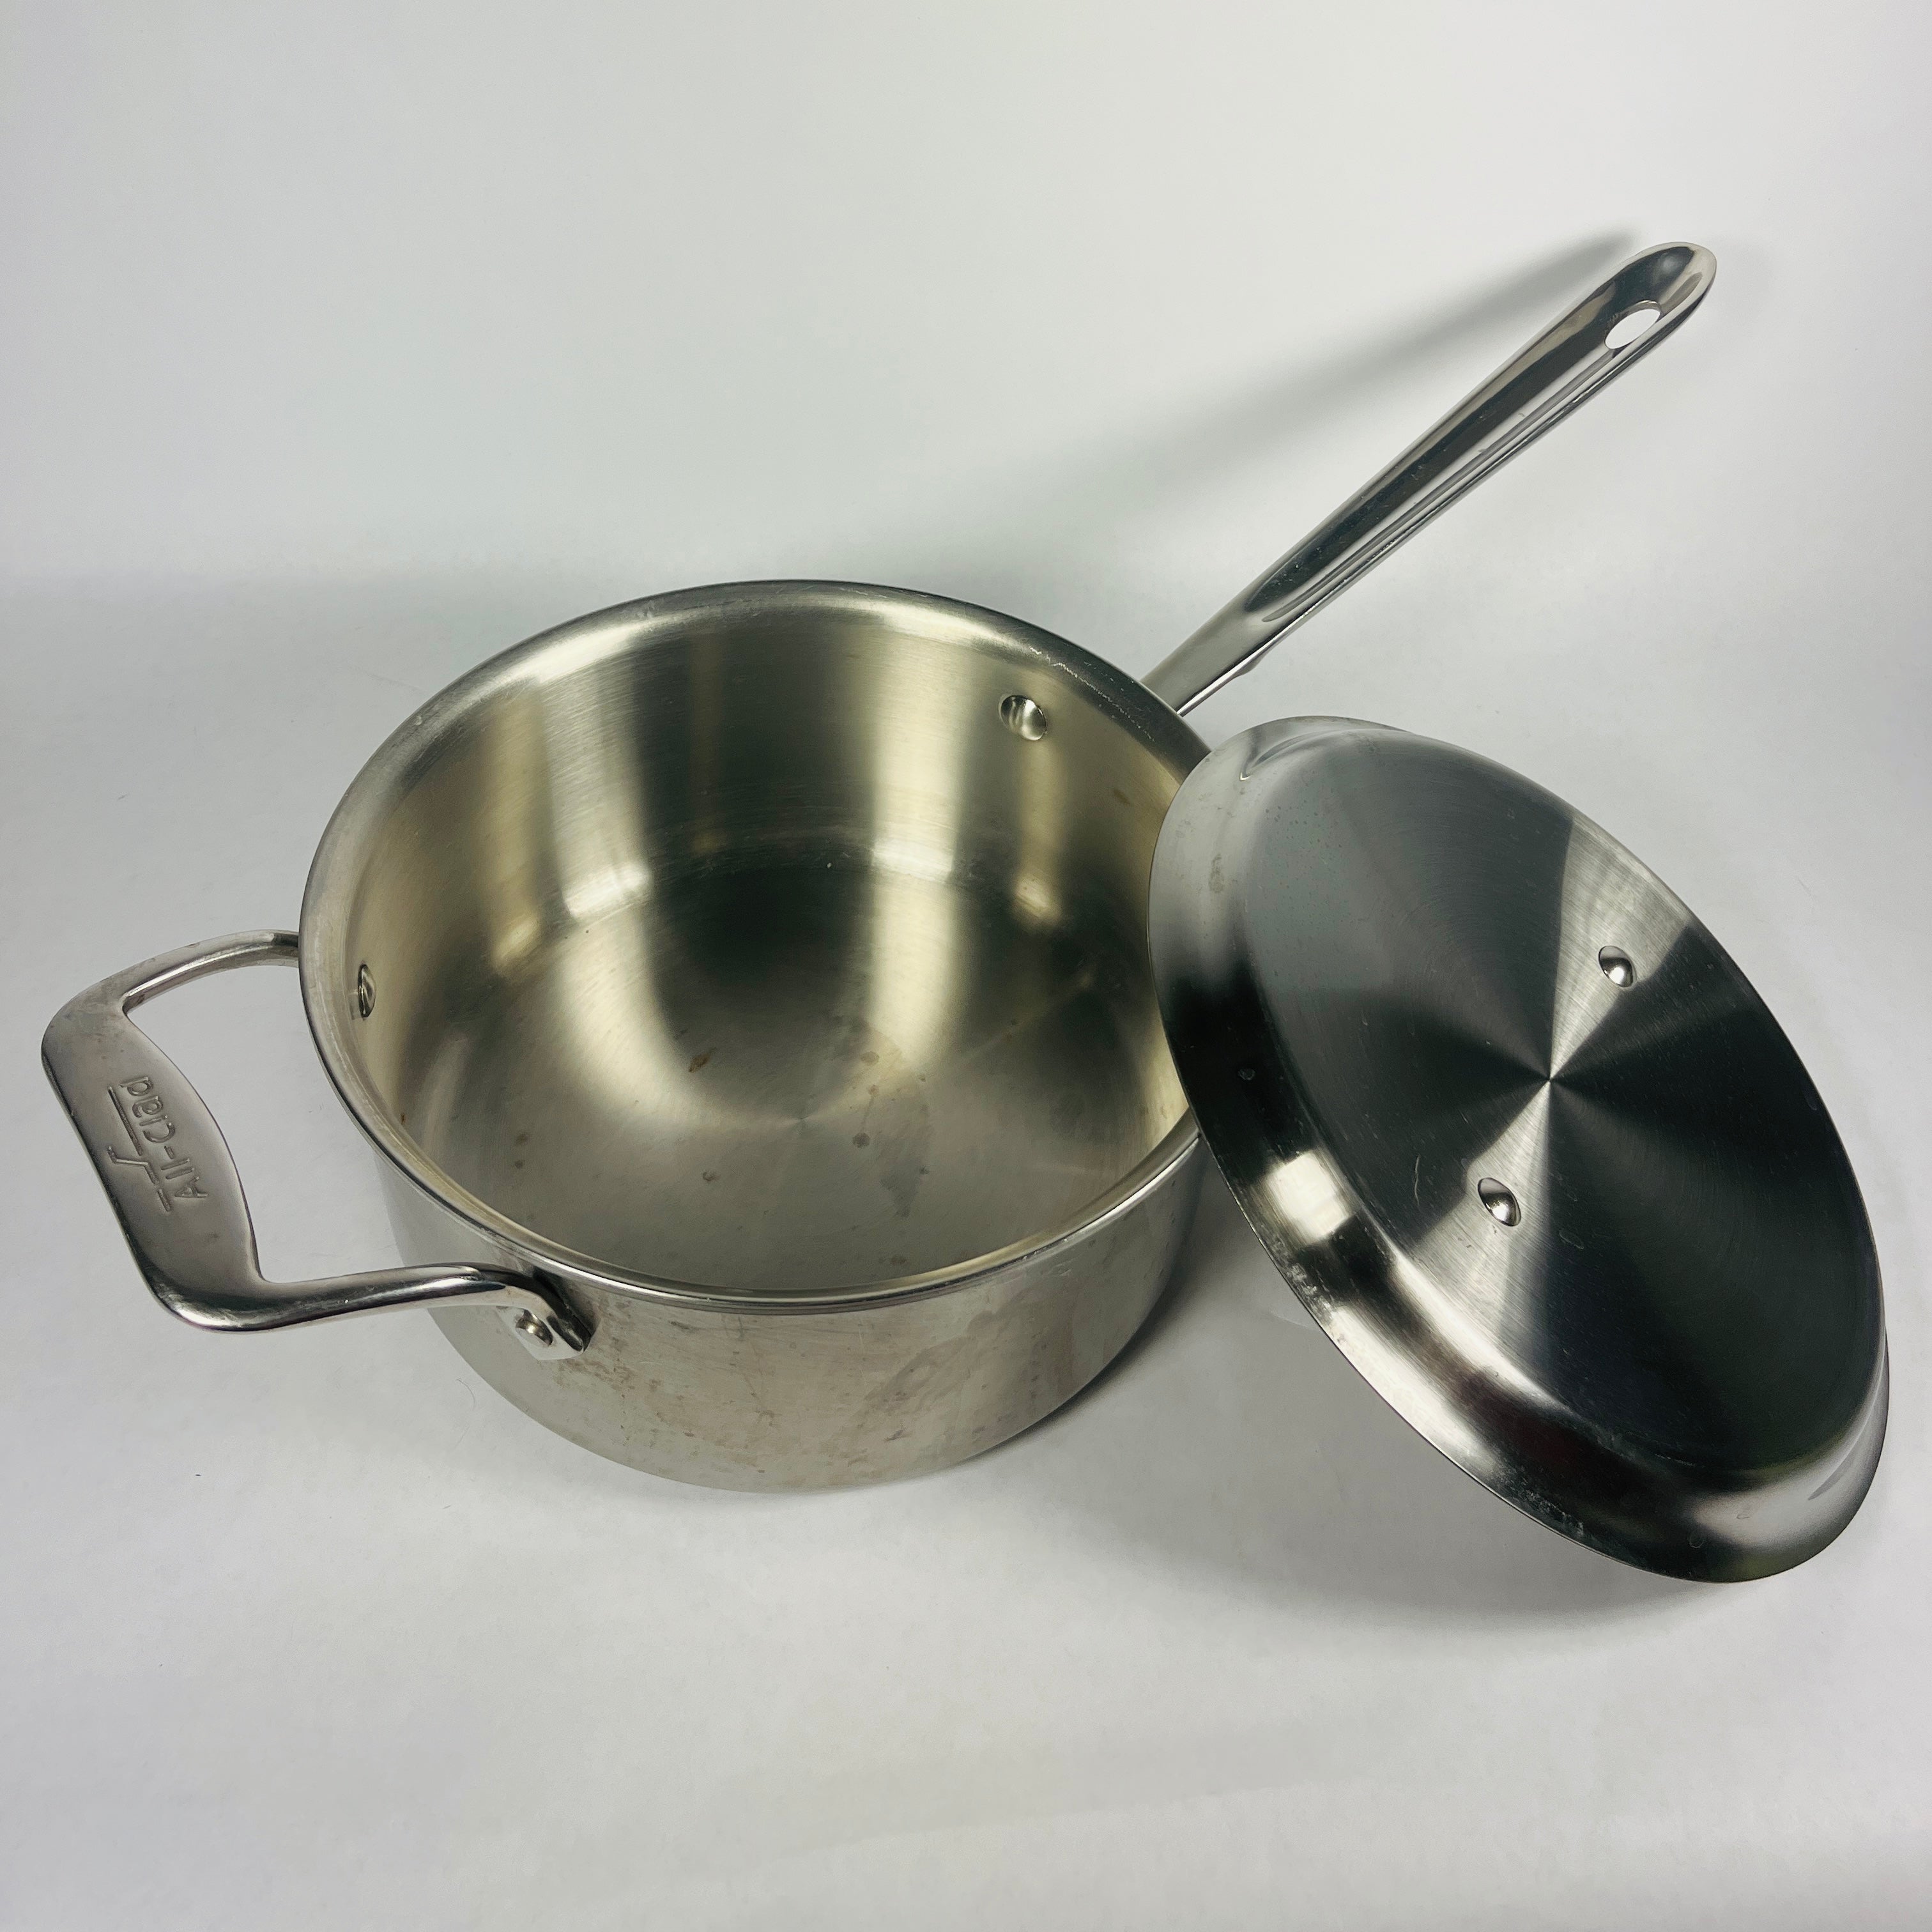 https://spoonskitchenexchange.com/cdn/shop/files/All-Clad-saucepan-with-lid-open-spoons-kitchen-exchange.jpg?v=1686086294